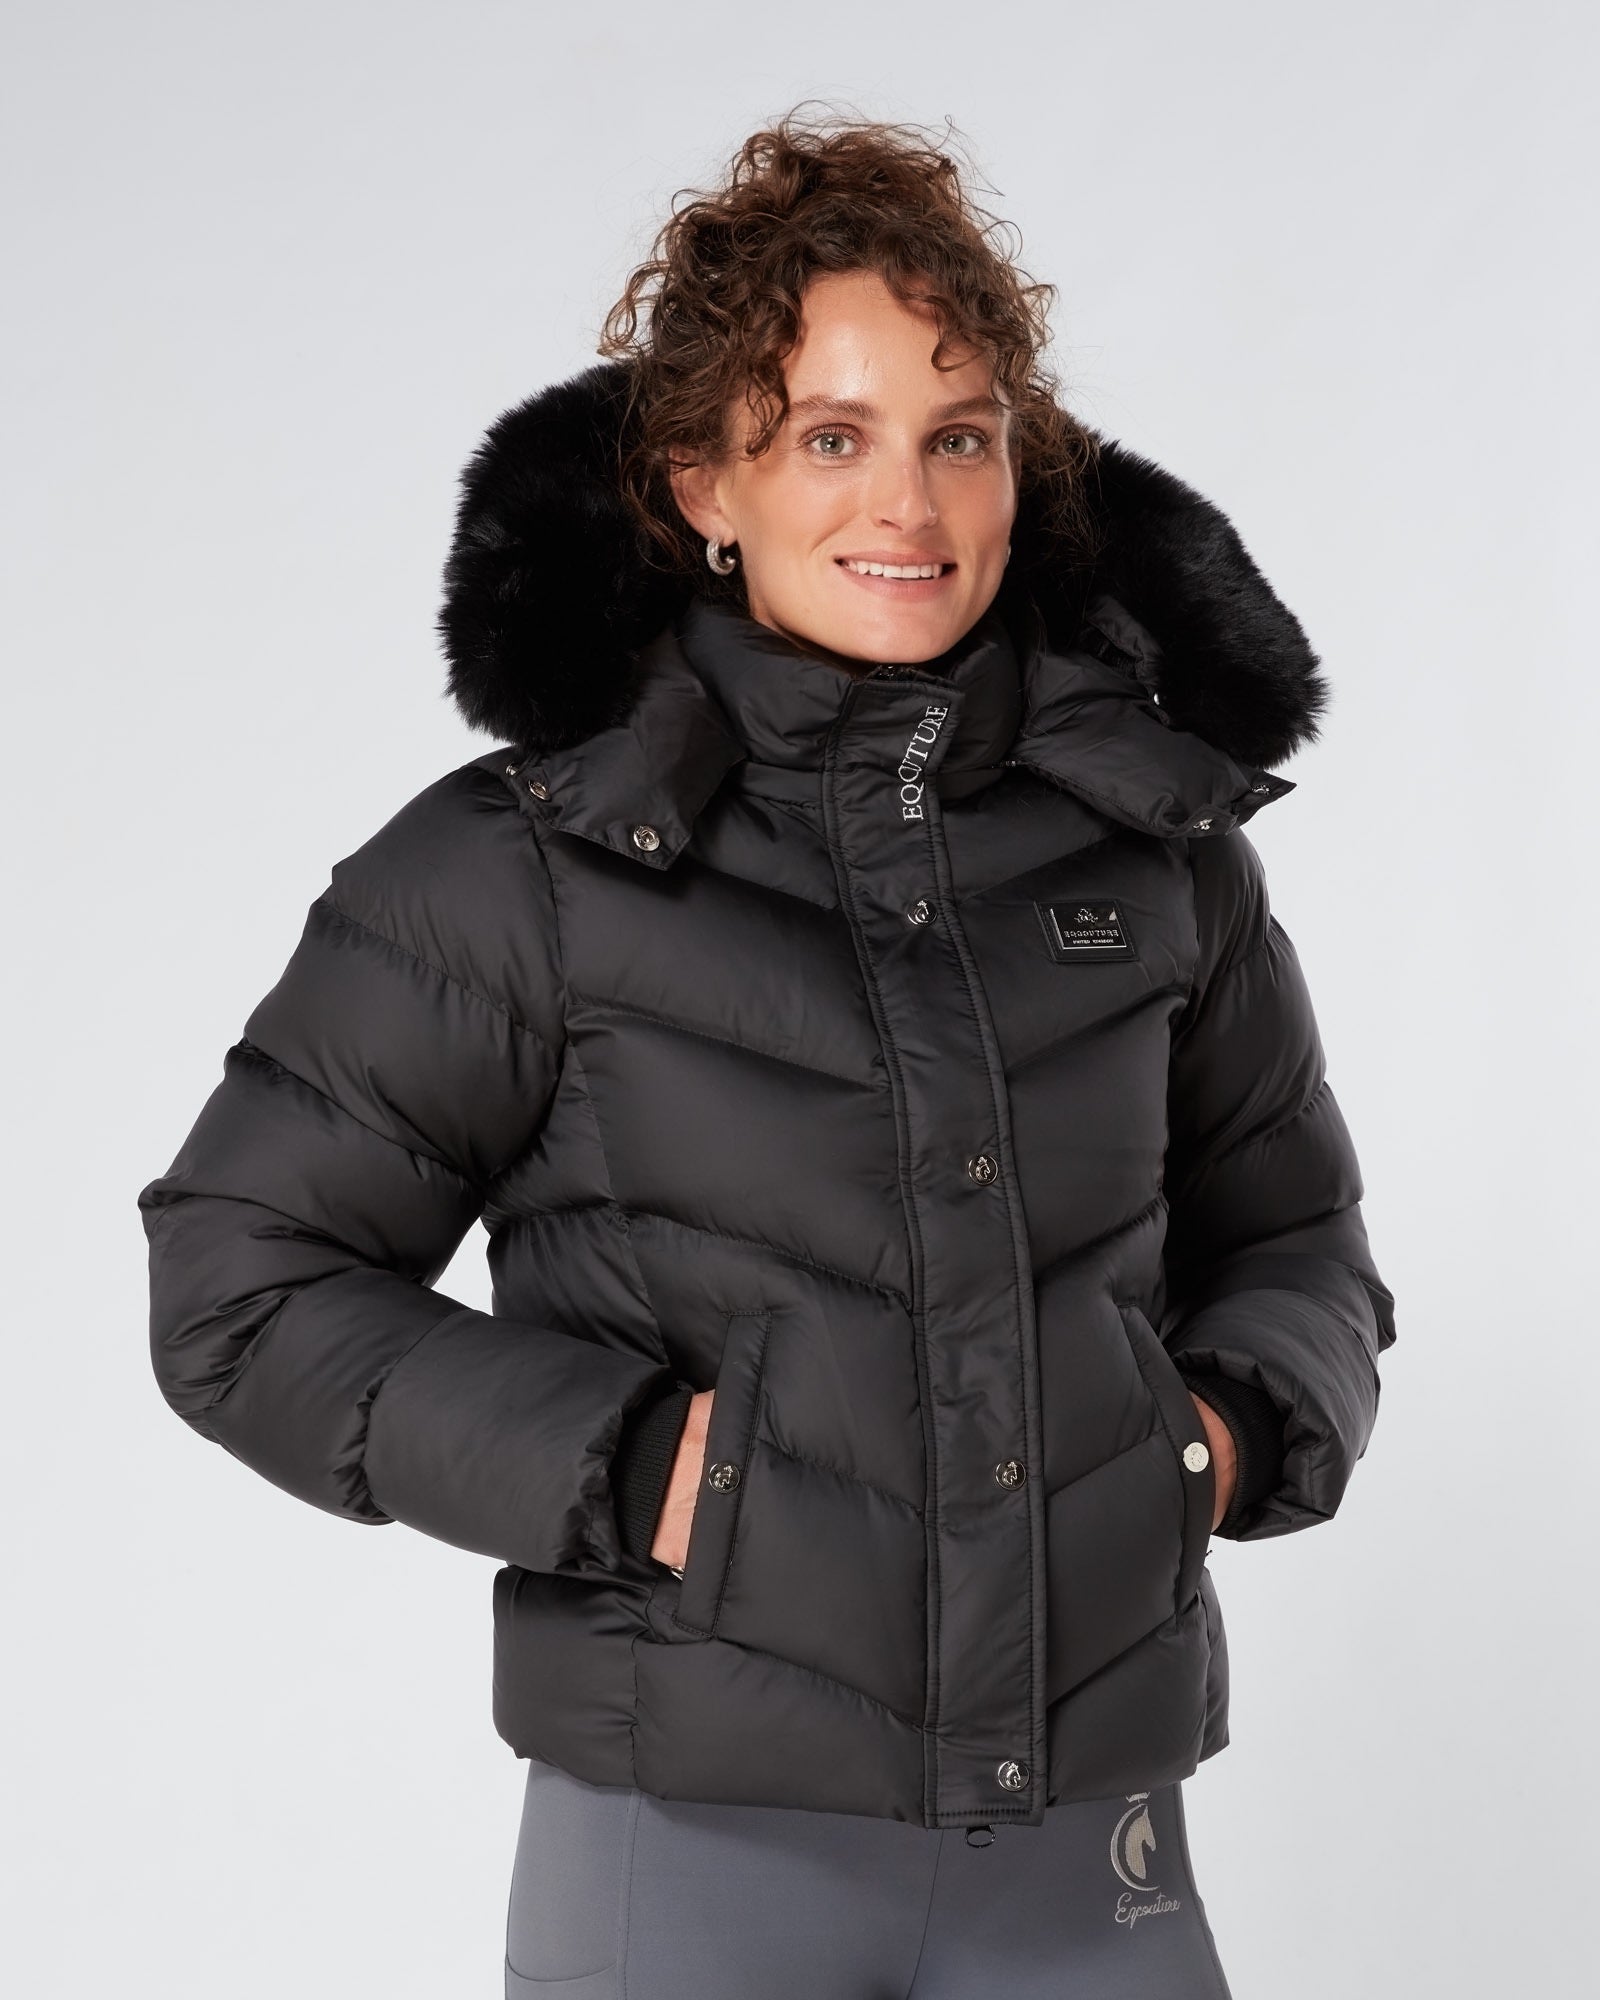 Exclusive Short Black Puffer Coat 3.0 / Jacket - Detachable Hood & Faux Fur